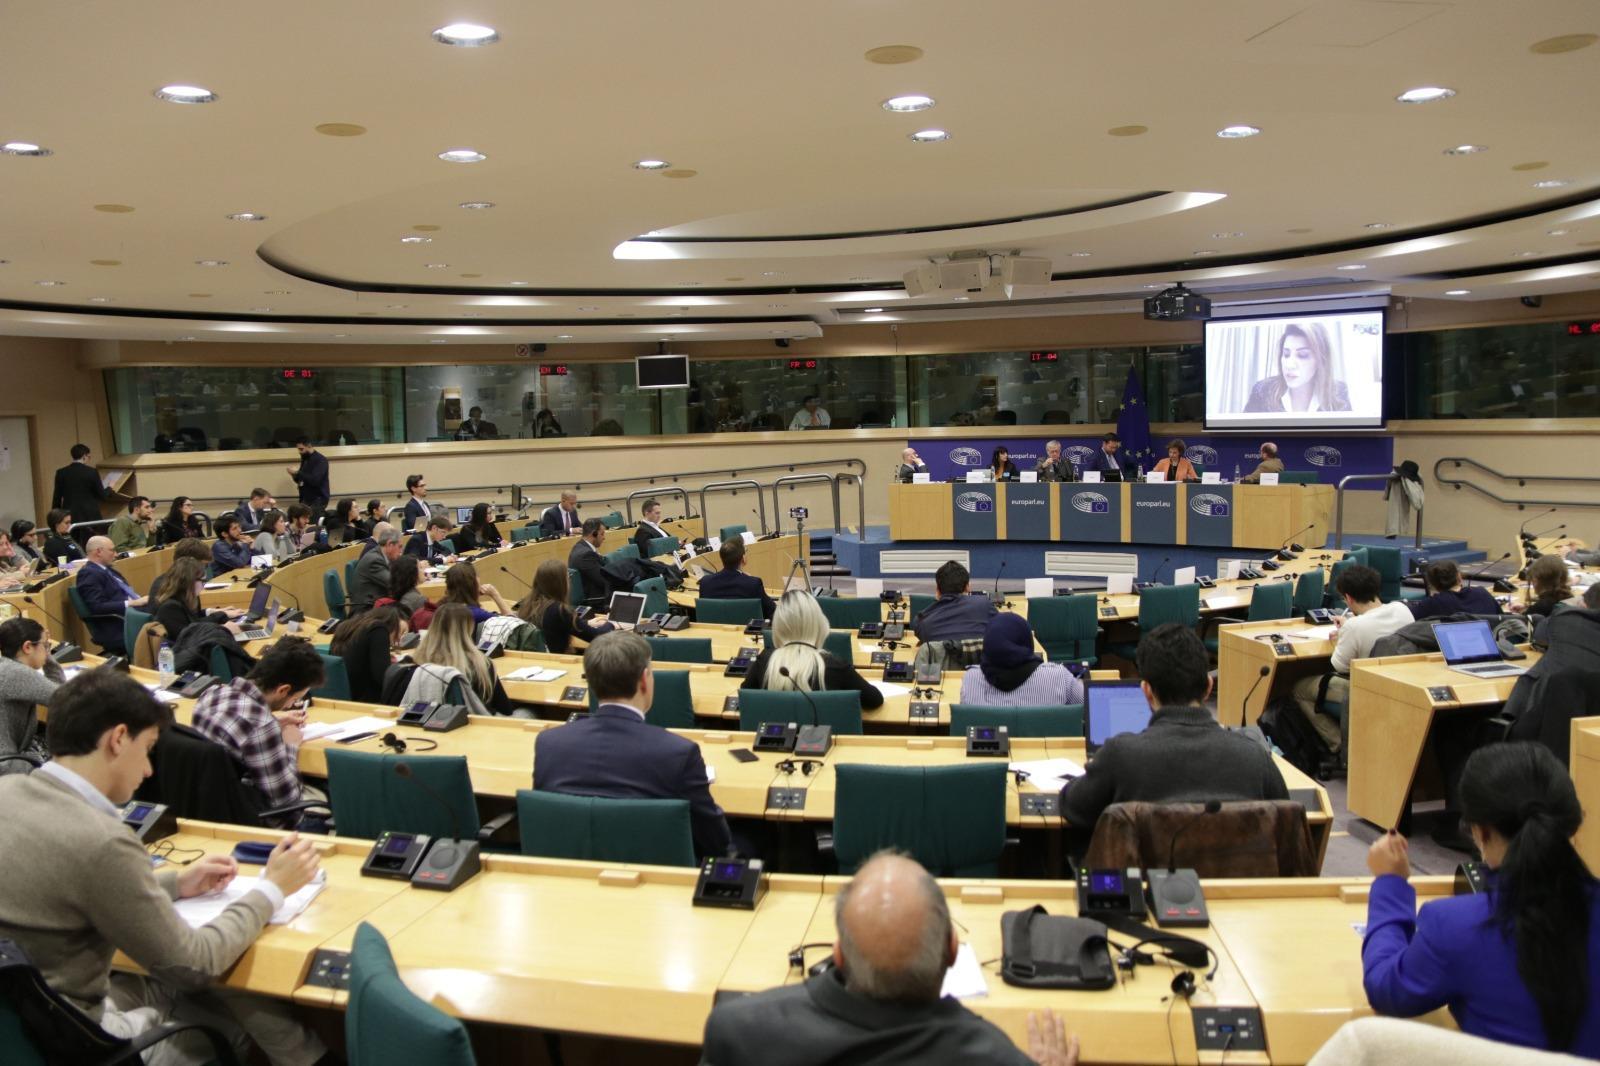   مؤتمر في البرلمان الأوروبي يدعو أوروبا لاتخاذ سياسة حازمة تجاه الانتهاكات الإيرانية